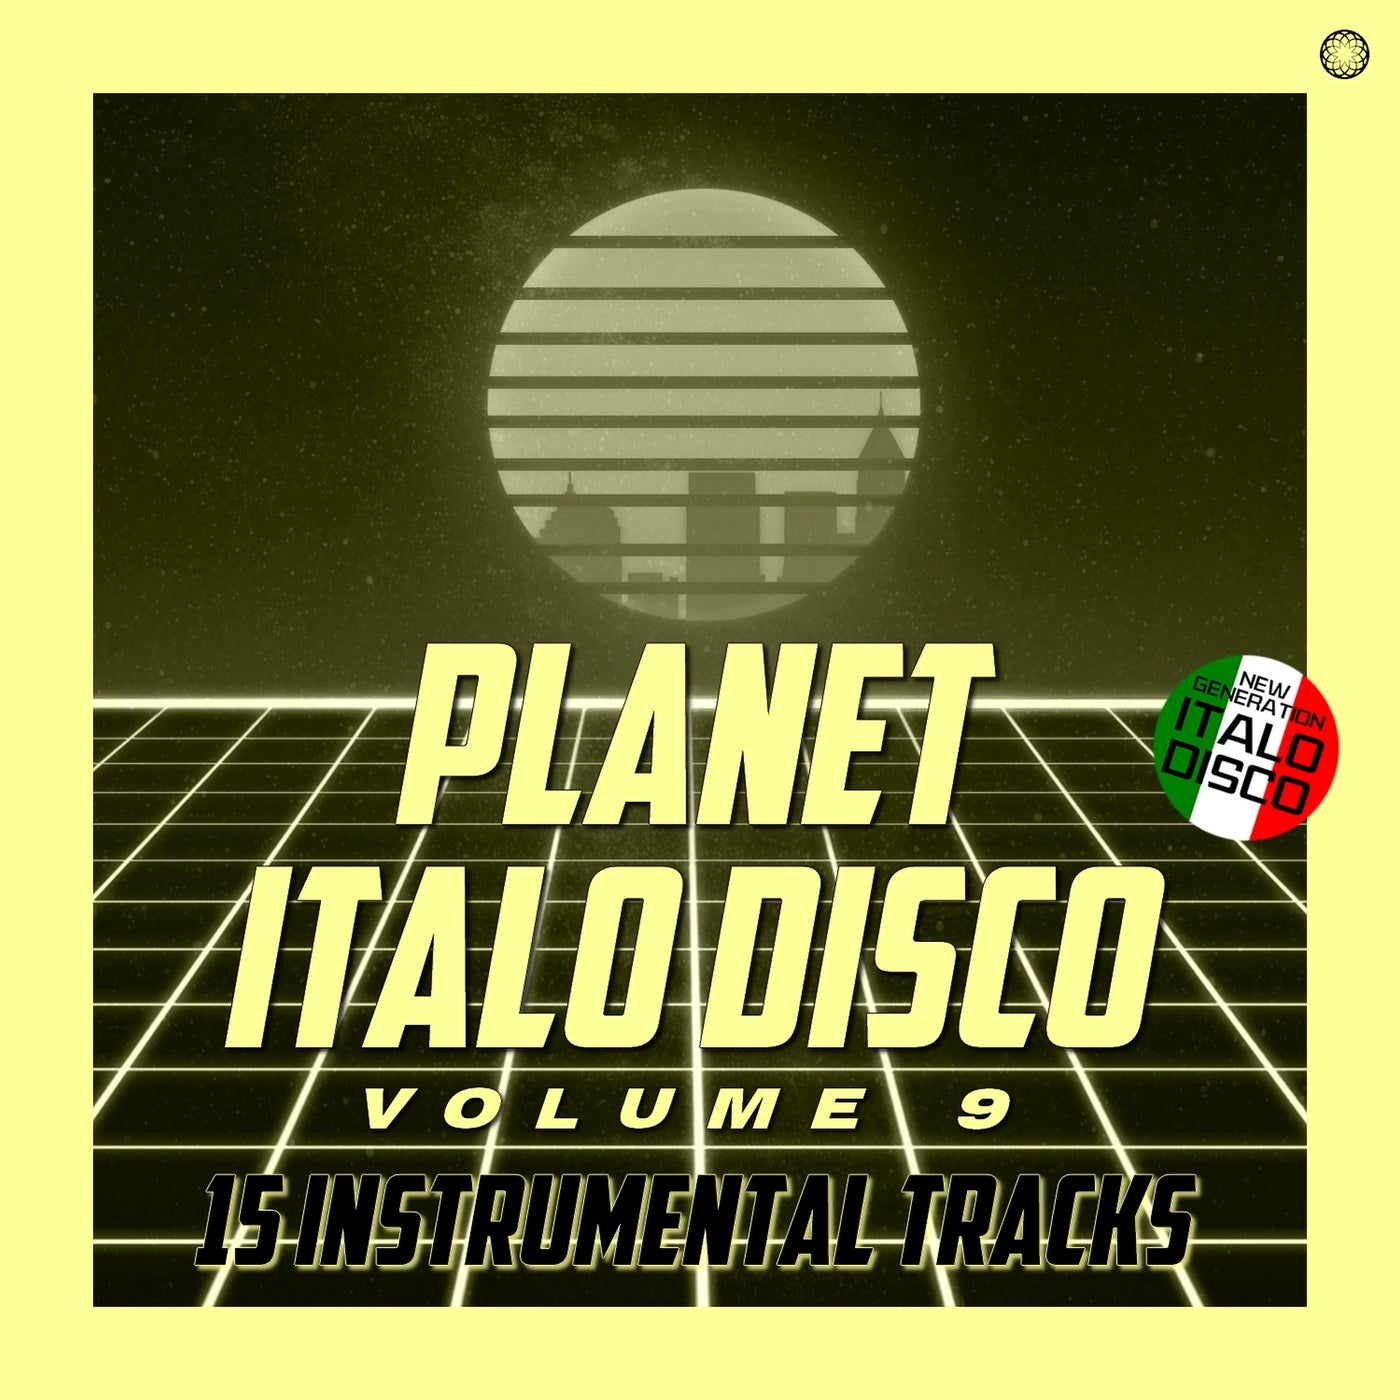 Planet Italo Disco, Vol. 9